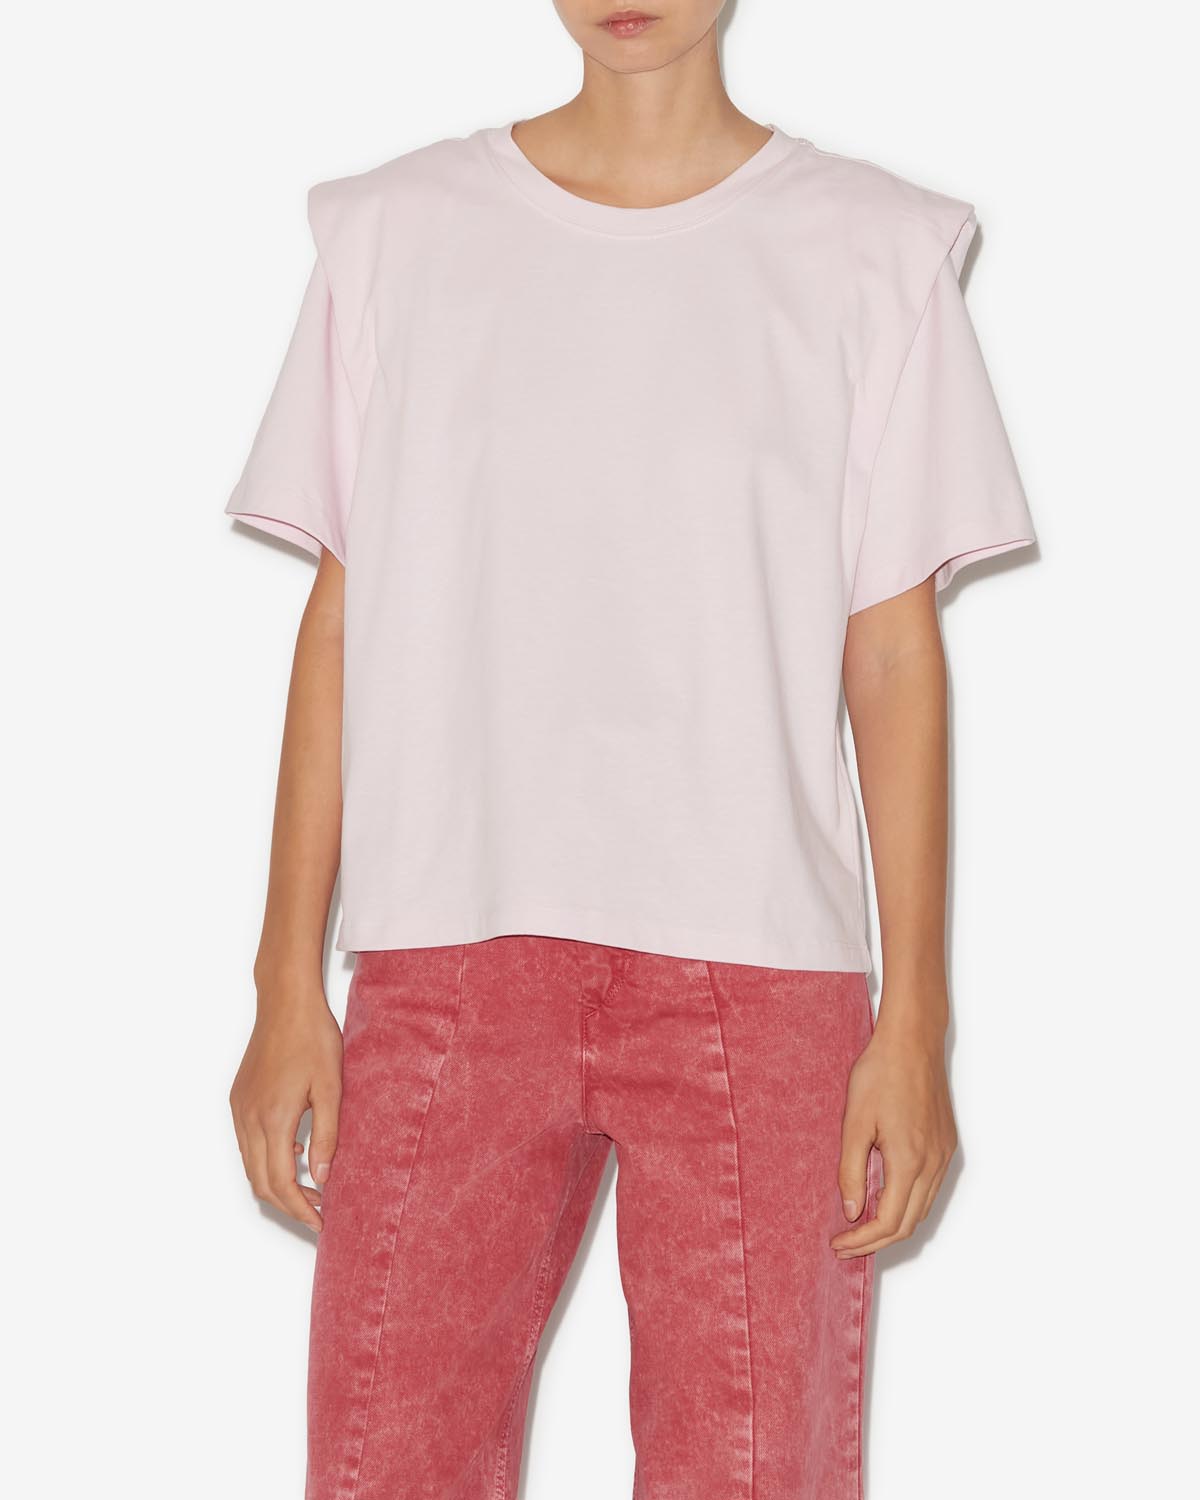 Zelitos tee shirt Woman Light pink 4